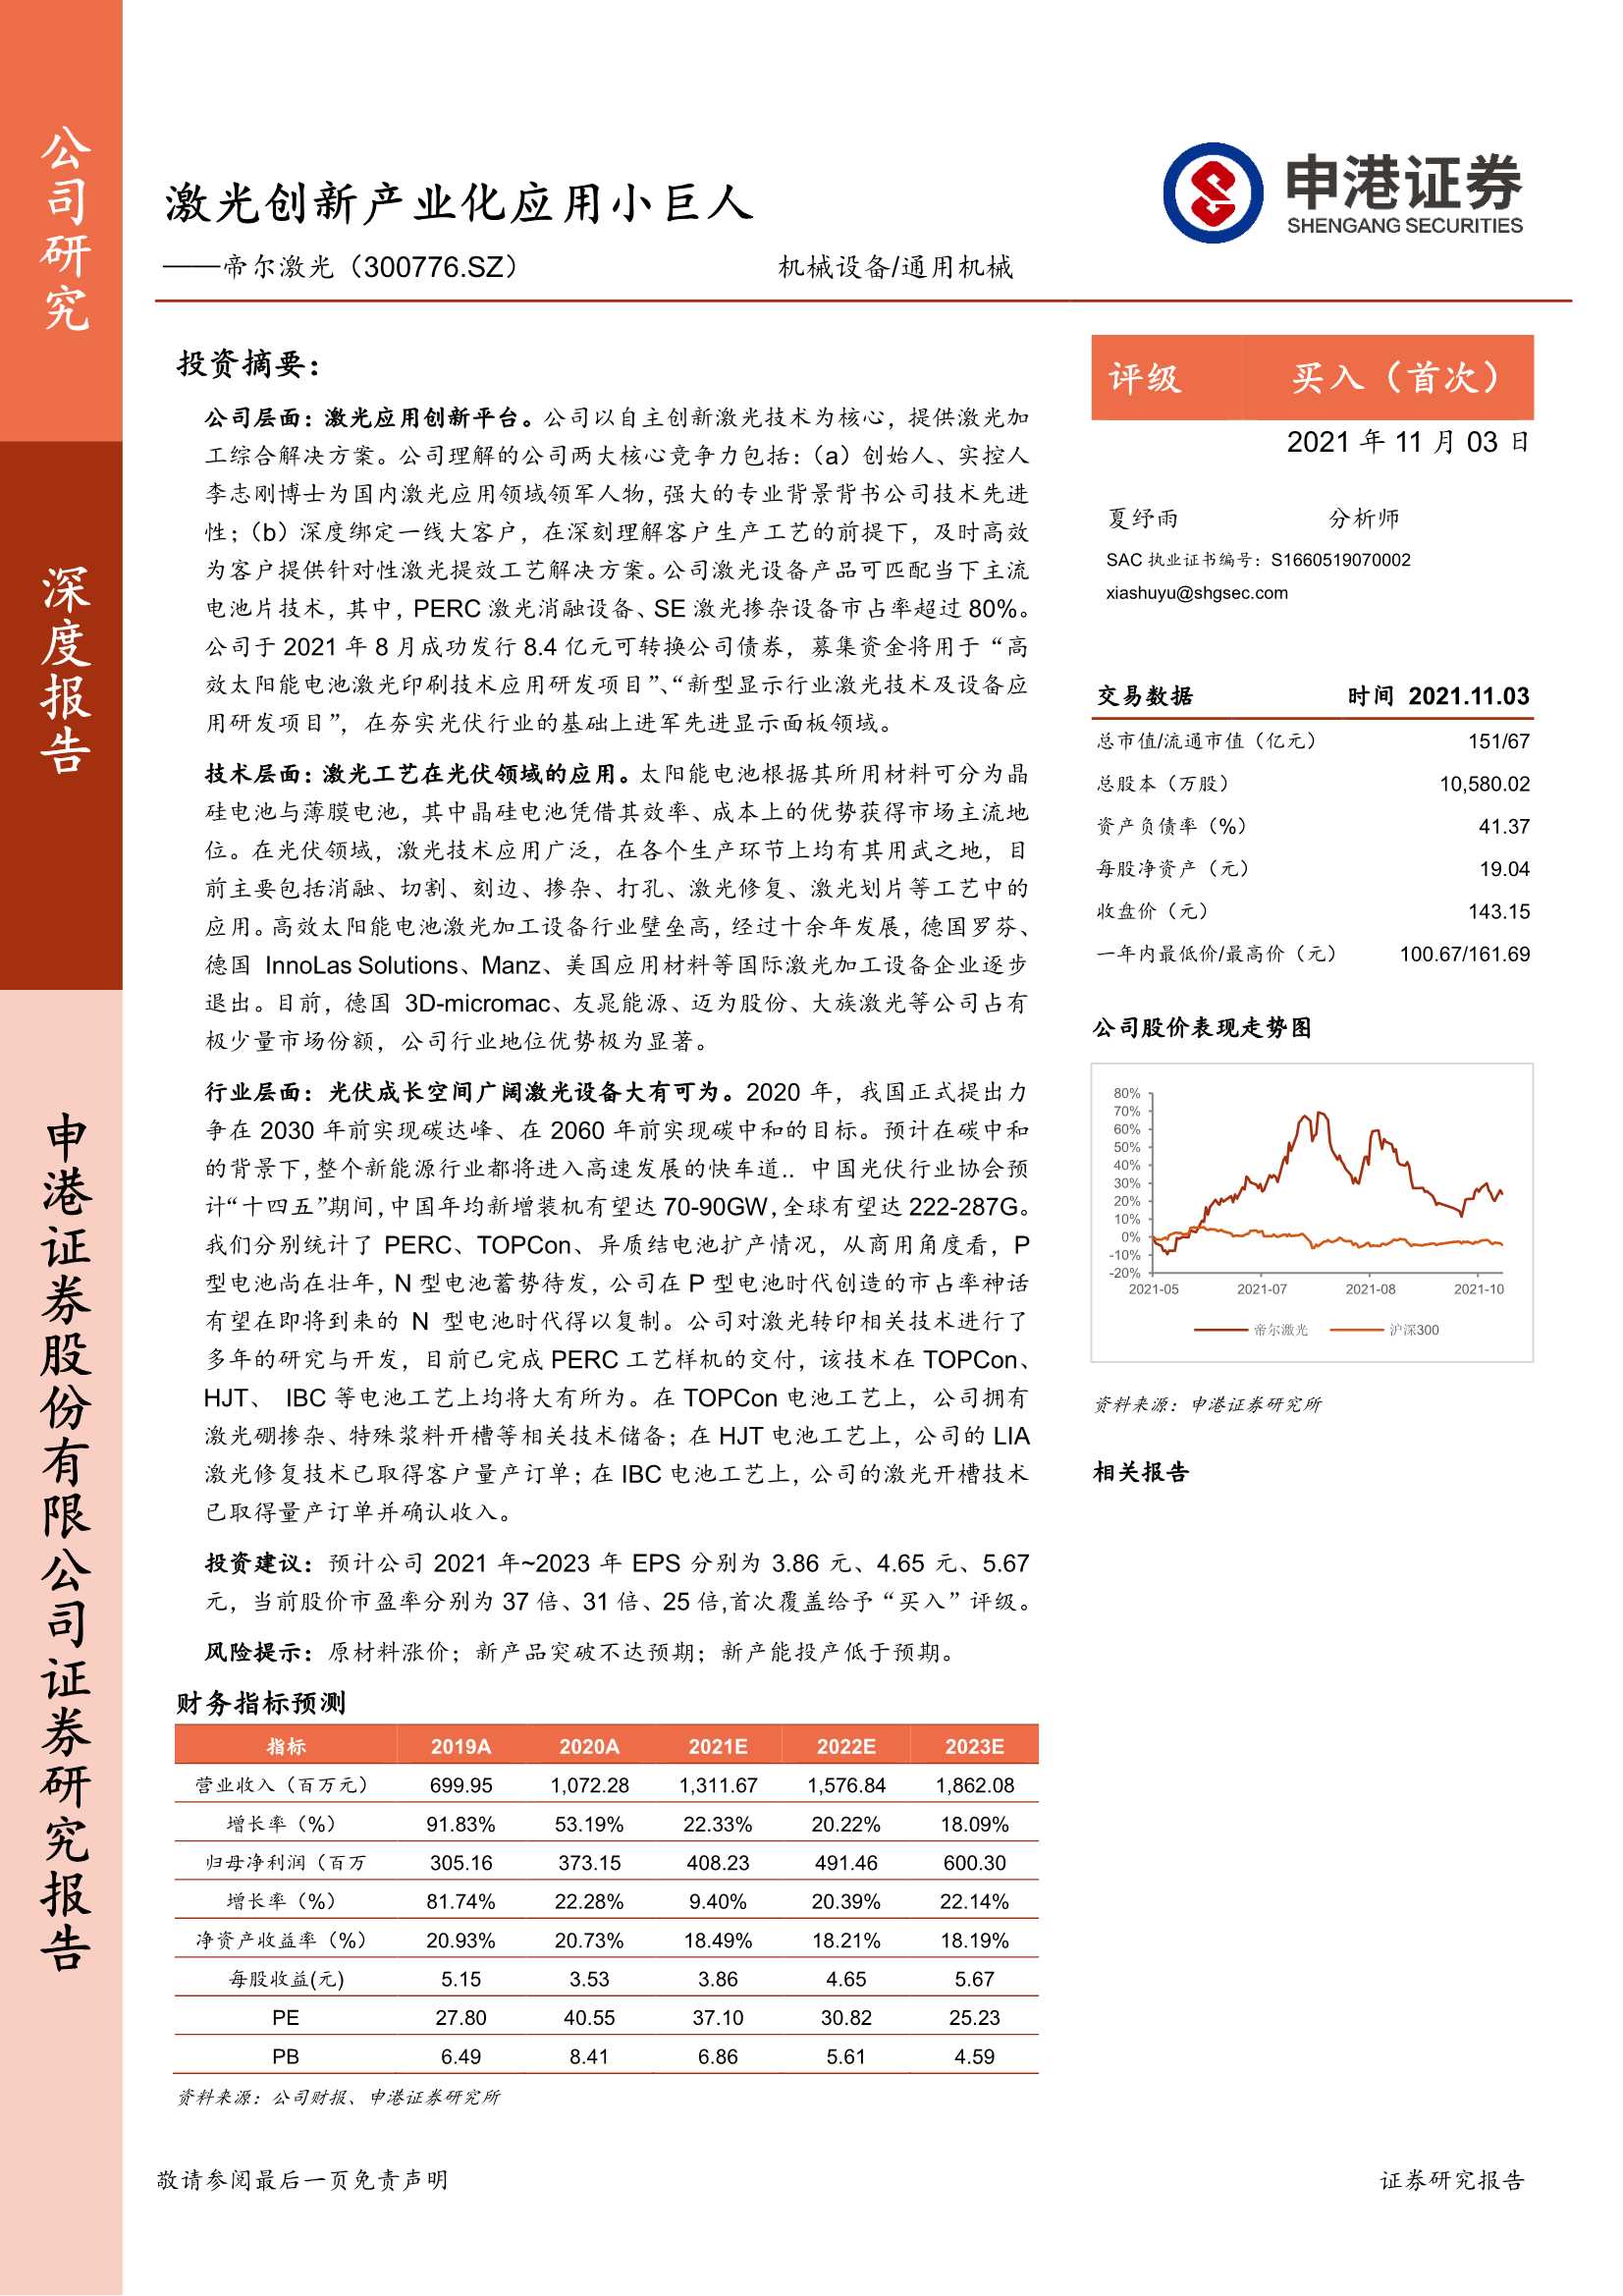 申港证券-帝尔激光-300776-激光创新产业化应用小巨人-20211103-26页